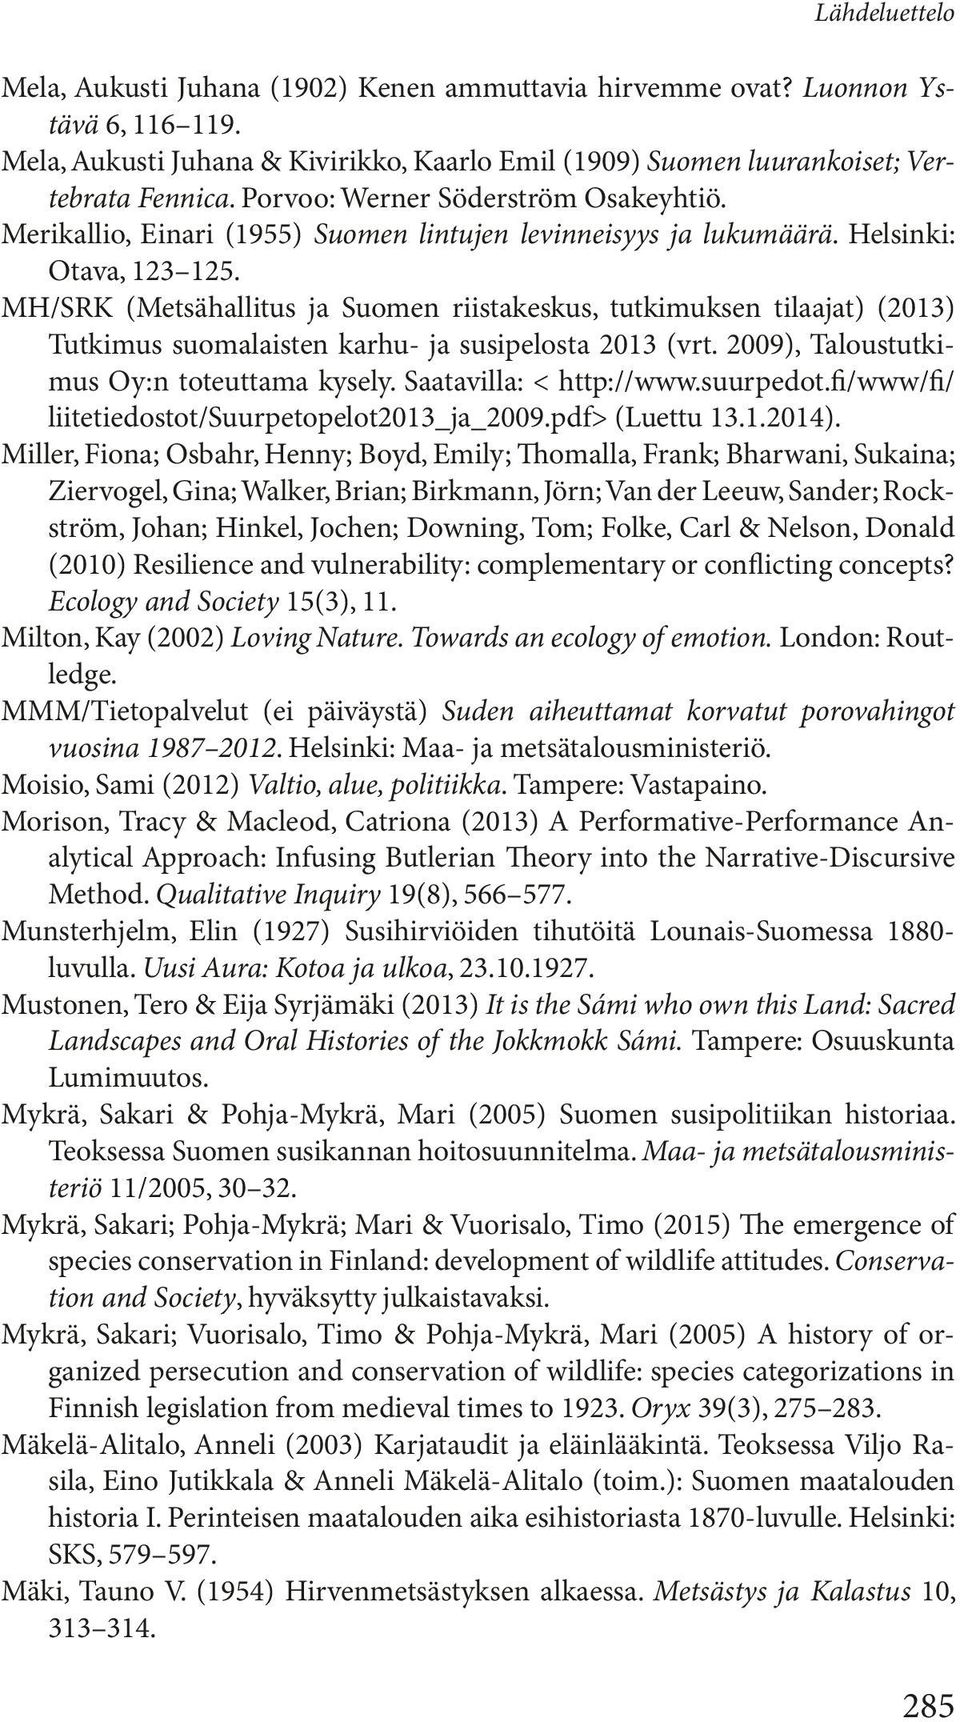 MH/SRK (Metsähallitus ja Suomen riistakeskus, tutkimuksen tilaajat) (2013) Tutkimus suomalaisten karhu- ja susipelosta 2013 (vrt. 2009), Taloustutkimus Oy:n toteuttama kysely.